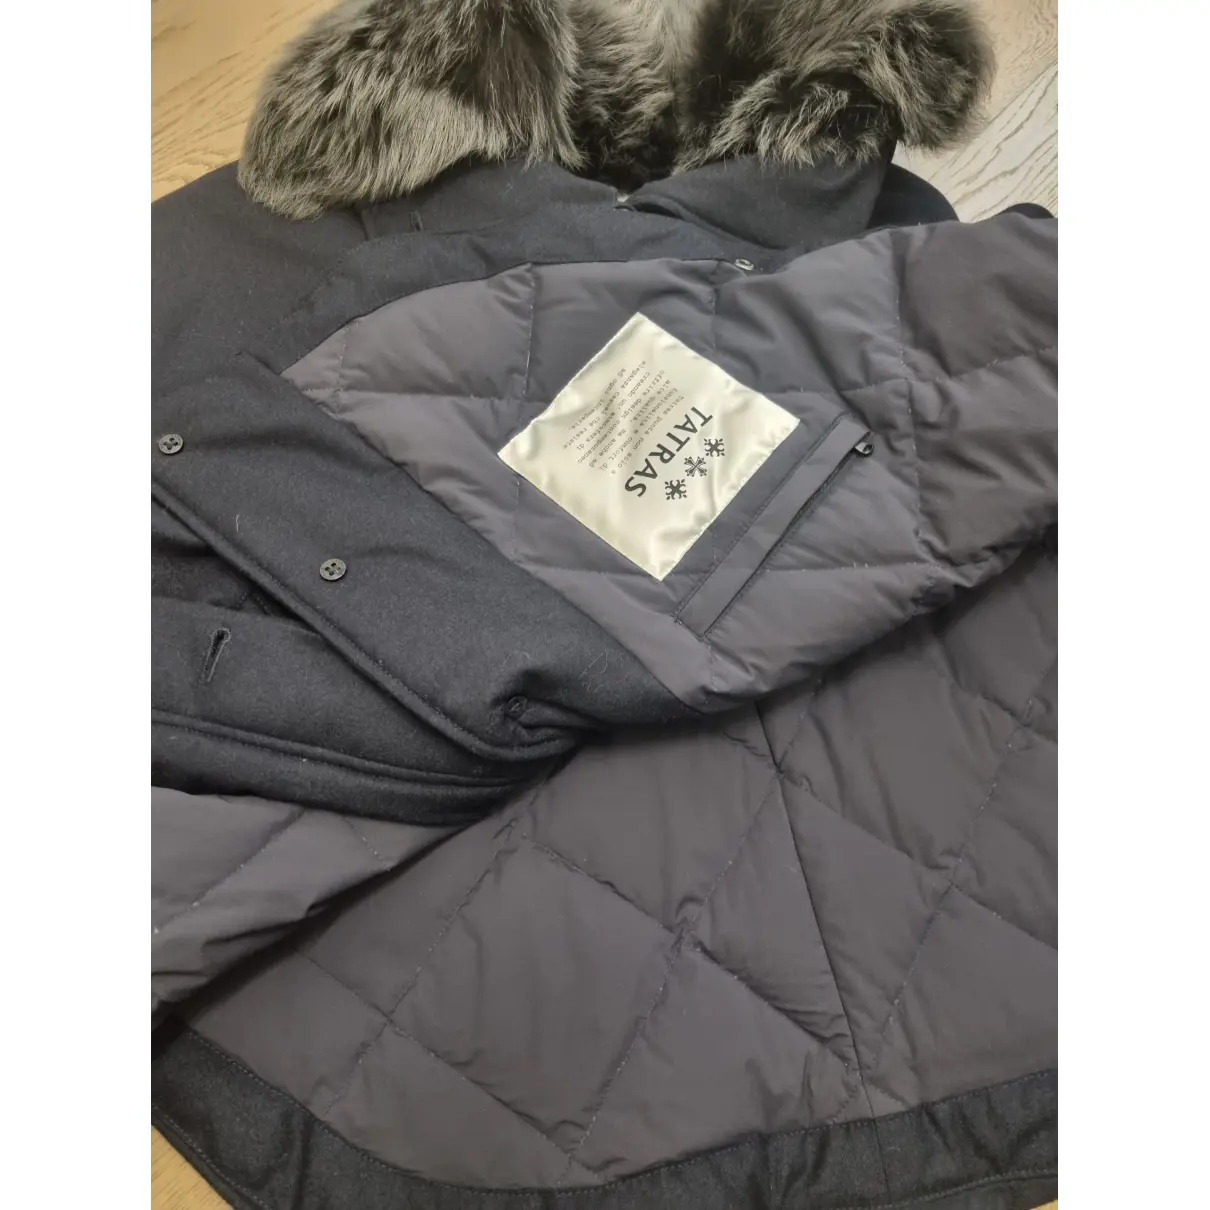 Wool jacket Tatras